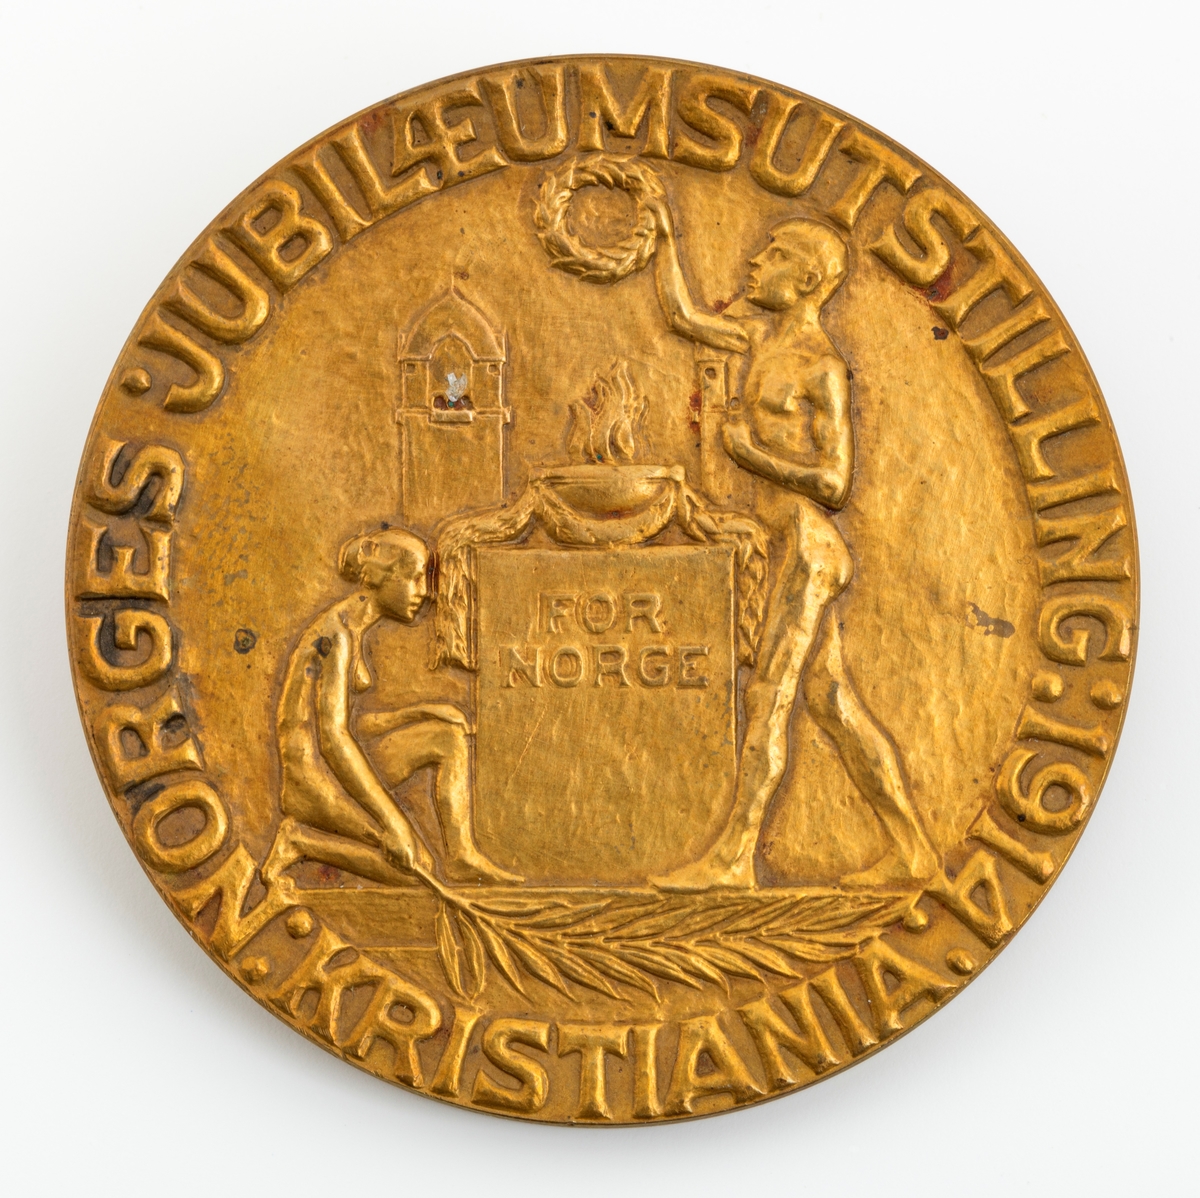 Denne sølvmedaljen fikk Ole Jacobsen Vestby (1875-1954) i 1914 på jubilæumsutstillingen som ble avviklet på Frogner i Oslo (da Kristiania), for å markere at det var 100 år siden Norge fikk sin egen grunnlov og dermed en betydelig selvstendighet, til tross for personalunionen med den svenske kongen som statsoverhode (fram til 1905). Medaljen er sirkelrund og overflater som er prydet med et relieffer. På den ene sida er det et motiv med to nakne mennesker, ei kvinne og en mann. Kvinna sitter på huk ved en sokkel som danner underlag for et kar som det kan se ut til å komme ildtungfer opp av. Kvinna holder et diger blad i den ene handa. Mannen står på den andre sida av sokkelen og holder en krans over over sokkelen. På den andre sida er riksvåpenet - et skjold med en stilisert stående løvefigur som holder ei øks i forlabbene - det sentrale motivet. Omkring dette heraldiske symbolet er flata utfylt med greiner av bartre med kongler. Øverst på denne bildeflata er årstallene 1814 og 1914 plassert. Nederst, under riksvåpenet er det et horisontalt bånd der mottakerens navn - OLE J. VESTBY - er inngravert. 

Jubileumsutstillingen skulle være en manifestasjon av kvaliteter som preget nasjonen Norge, og særlig næringslivsaktørene som var inviterte til å presentere seg, sine produkter og den samfunnsnytten de gjorde. Som mange utstillinger  Dette er åpenbart en medalje som ble produsert i mange eksemplarer for pågravering av navnene til de som juryene fant verdige til å bli hedret. Ole Jacobsen hadde åpenbart spesielle håndverksferdigheter, og han arbeidet i et formspråk som fortsatt var trendy i 1914. I ettertid har flere antydet at årsaken til at Vestby ikke fikk gullmedalje, var at han ikke hadde smidd knivbladene sjøl. Det var det en smed i Romedal som hadde gjort. Bladene hadde en god håndverksmessig standard, men hadde ikke de spesielle kunstneriske kvalitetene som preget Vestbys slirer og skaft.